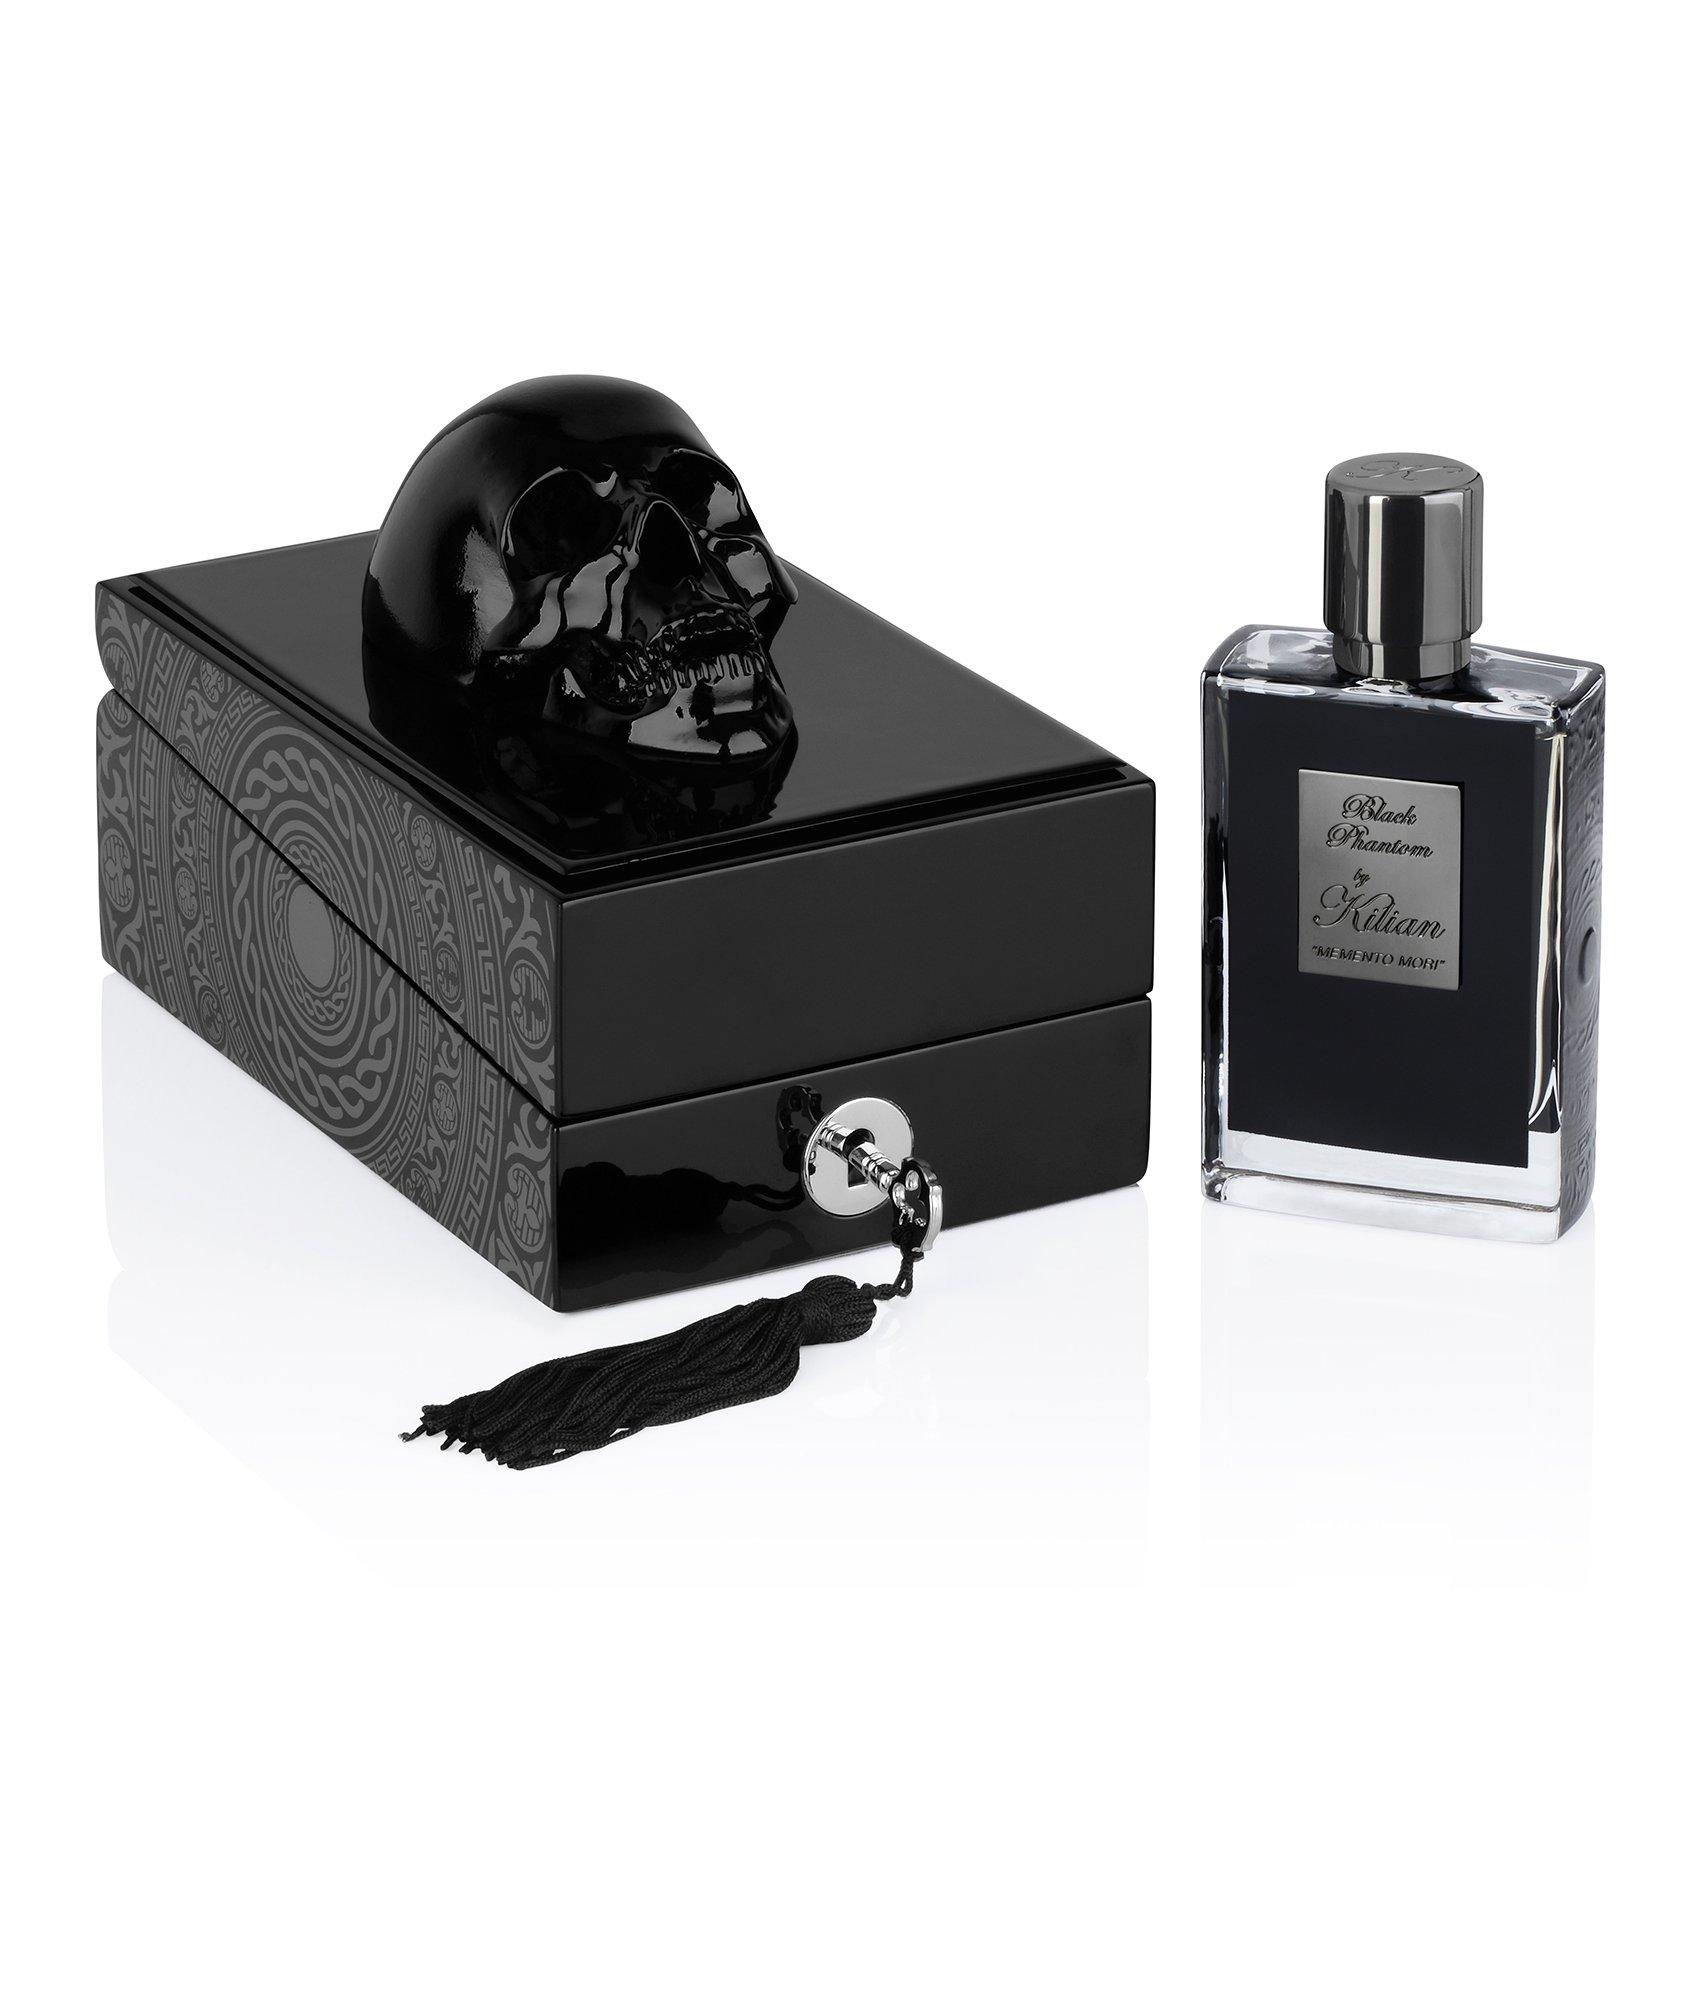 Vaporisateur réutilisable d'eau de parfum Black Phantom Memento Mori et boitier image 0